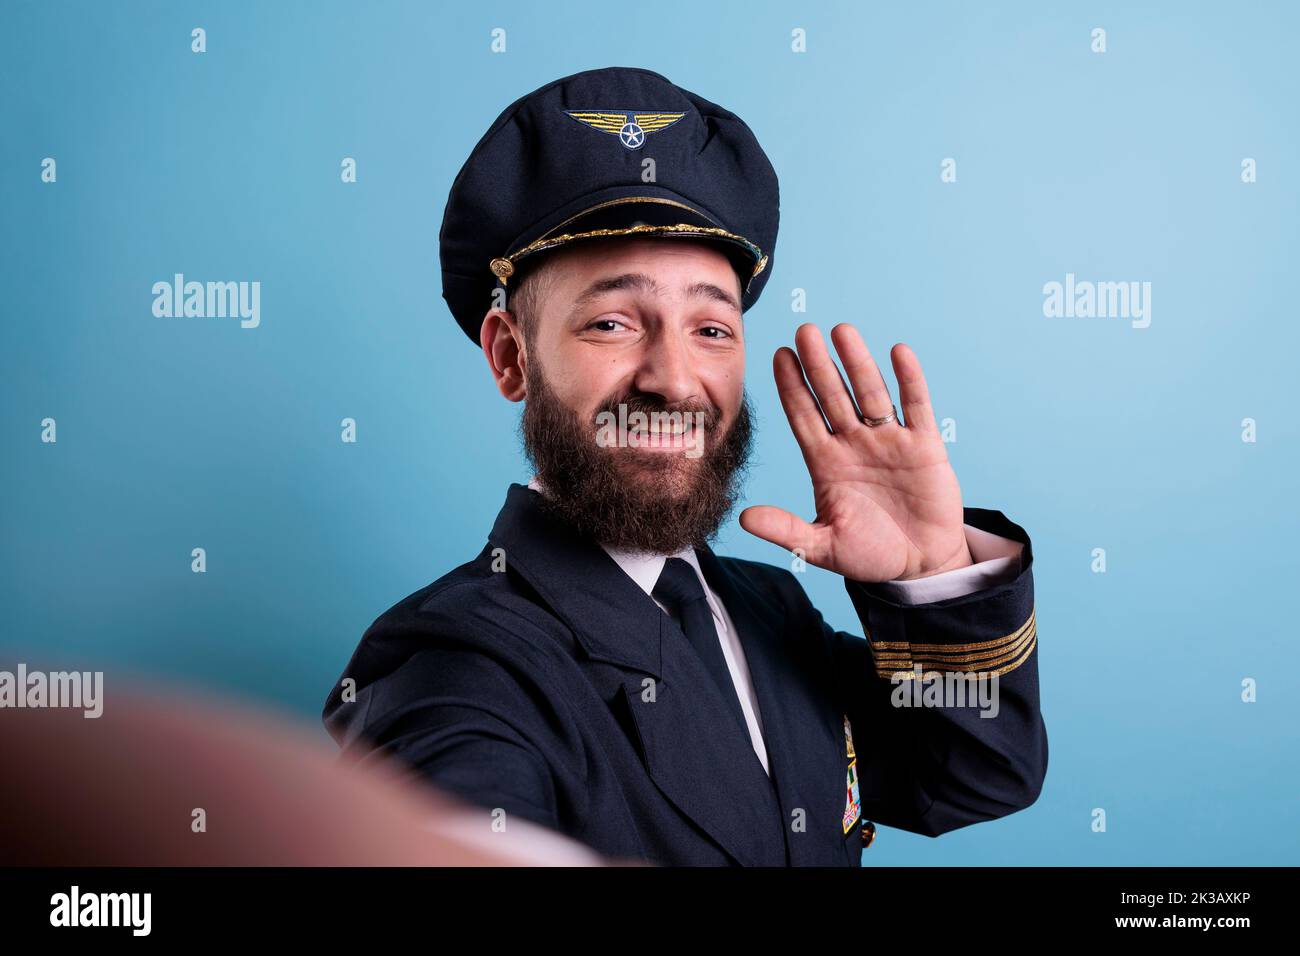 Pov lächelnder Flieger begrüßt die Kamera, macht Selfie auf der vorderen Smartphone-Kamera, fpv. Flugzeugpilot im mittleren Alter in Luftfahrtaubenuniform, Fotoaufnahme auf Mobiltelefon. Blick auf die erste Person Stockfoto